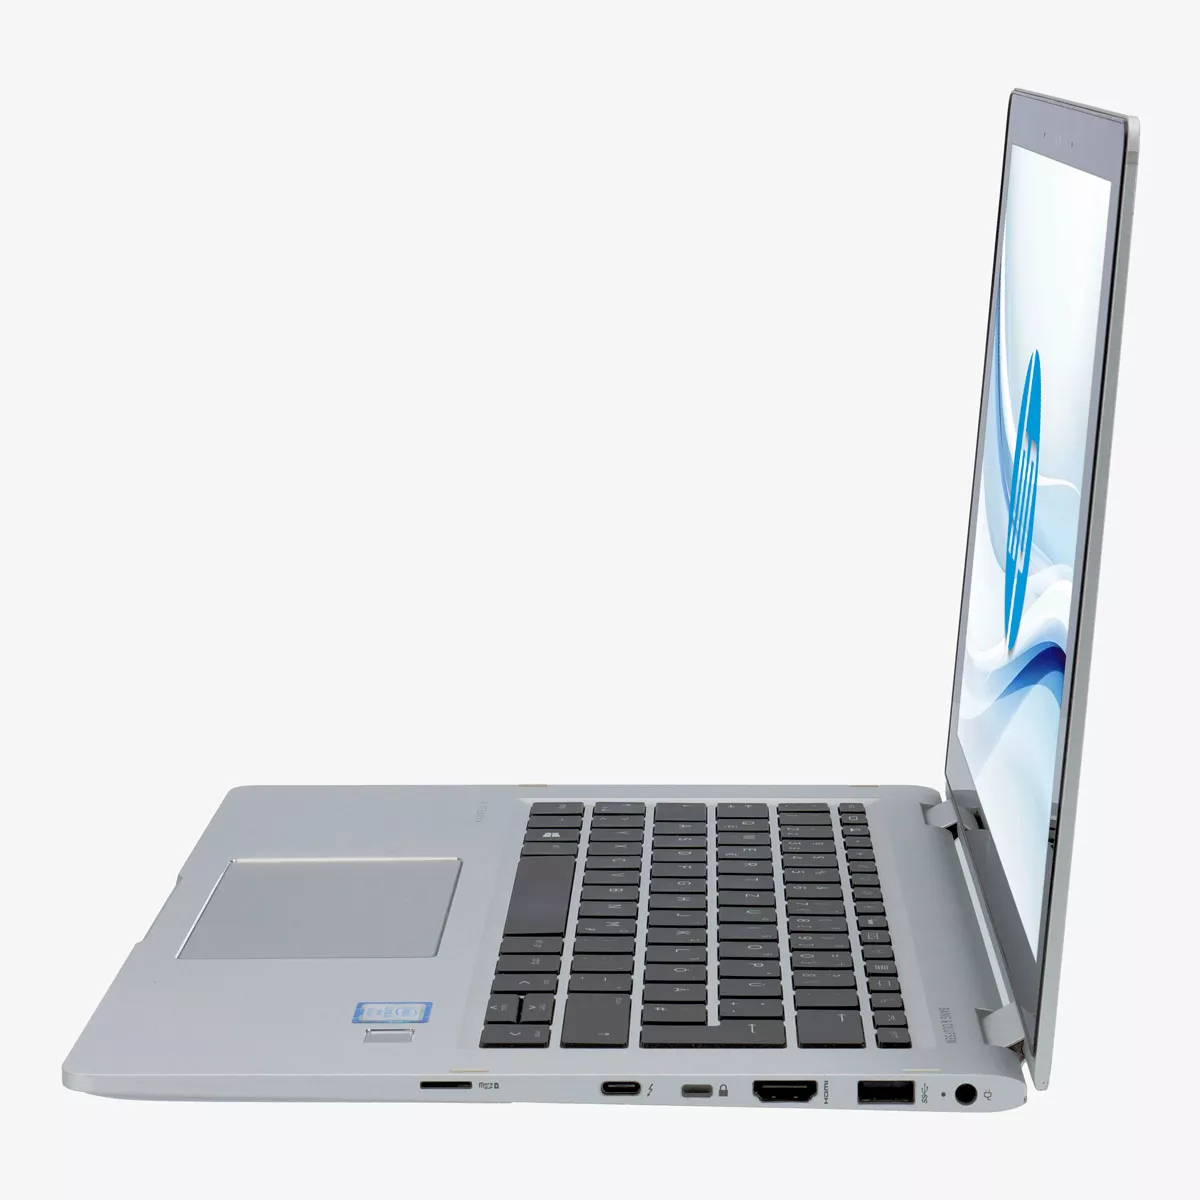 HP EliteBook x360 1030 G2 Core i5 7300U Touch 8 GB 500 GB M.2 nVME SSD Webcam A+